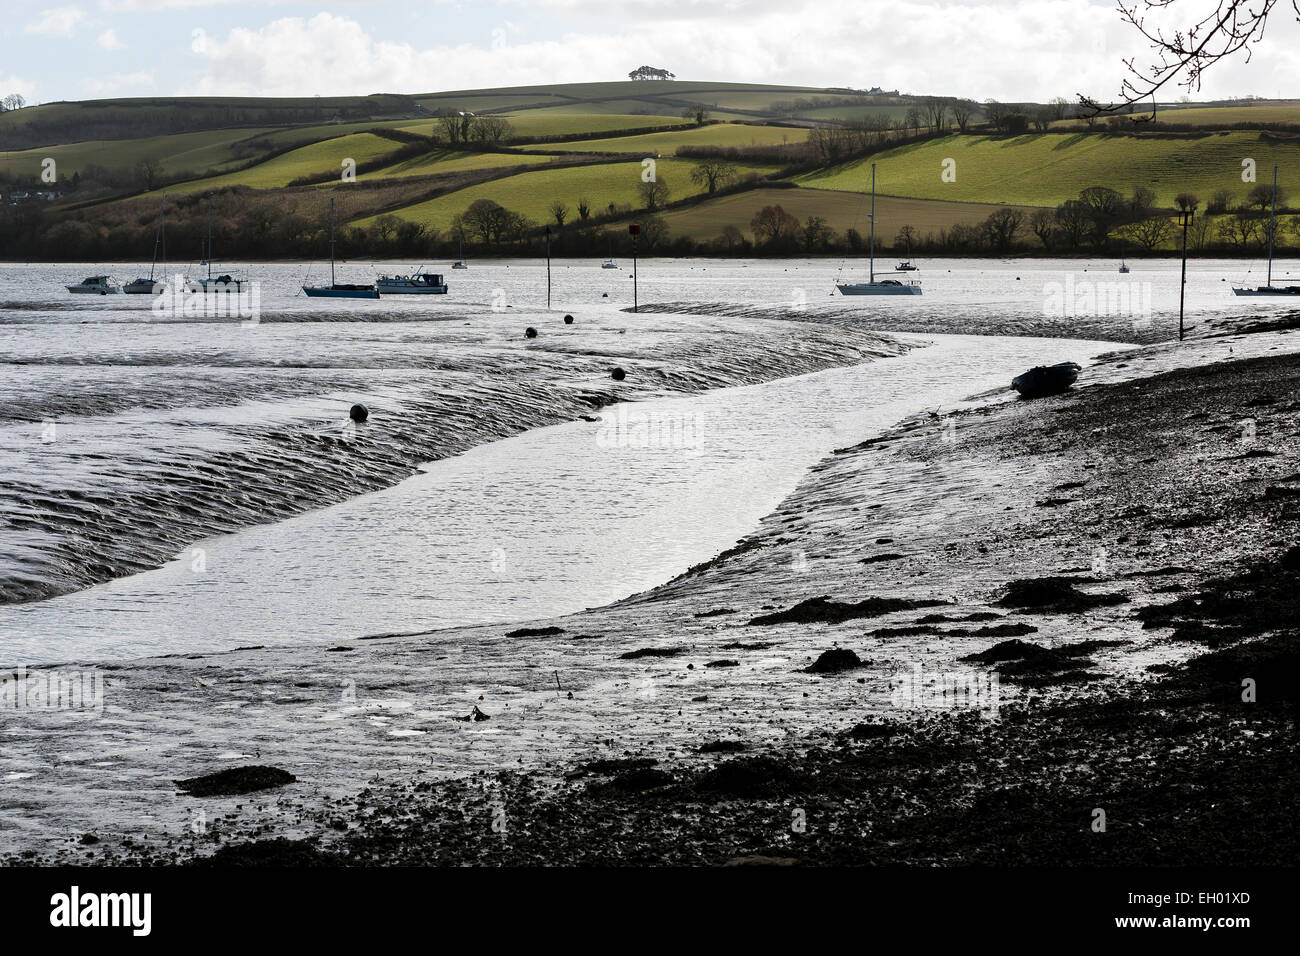 Marée basse à Stoke gabriel, South Hams, Devon, la marée basse à Stoke gabriel, South Hams, Devon,Rivière, de la rivière Dart, l'eau, l'eau qui coule, Banque D'Images